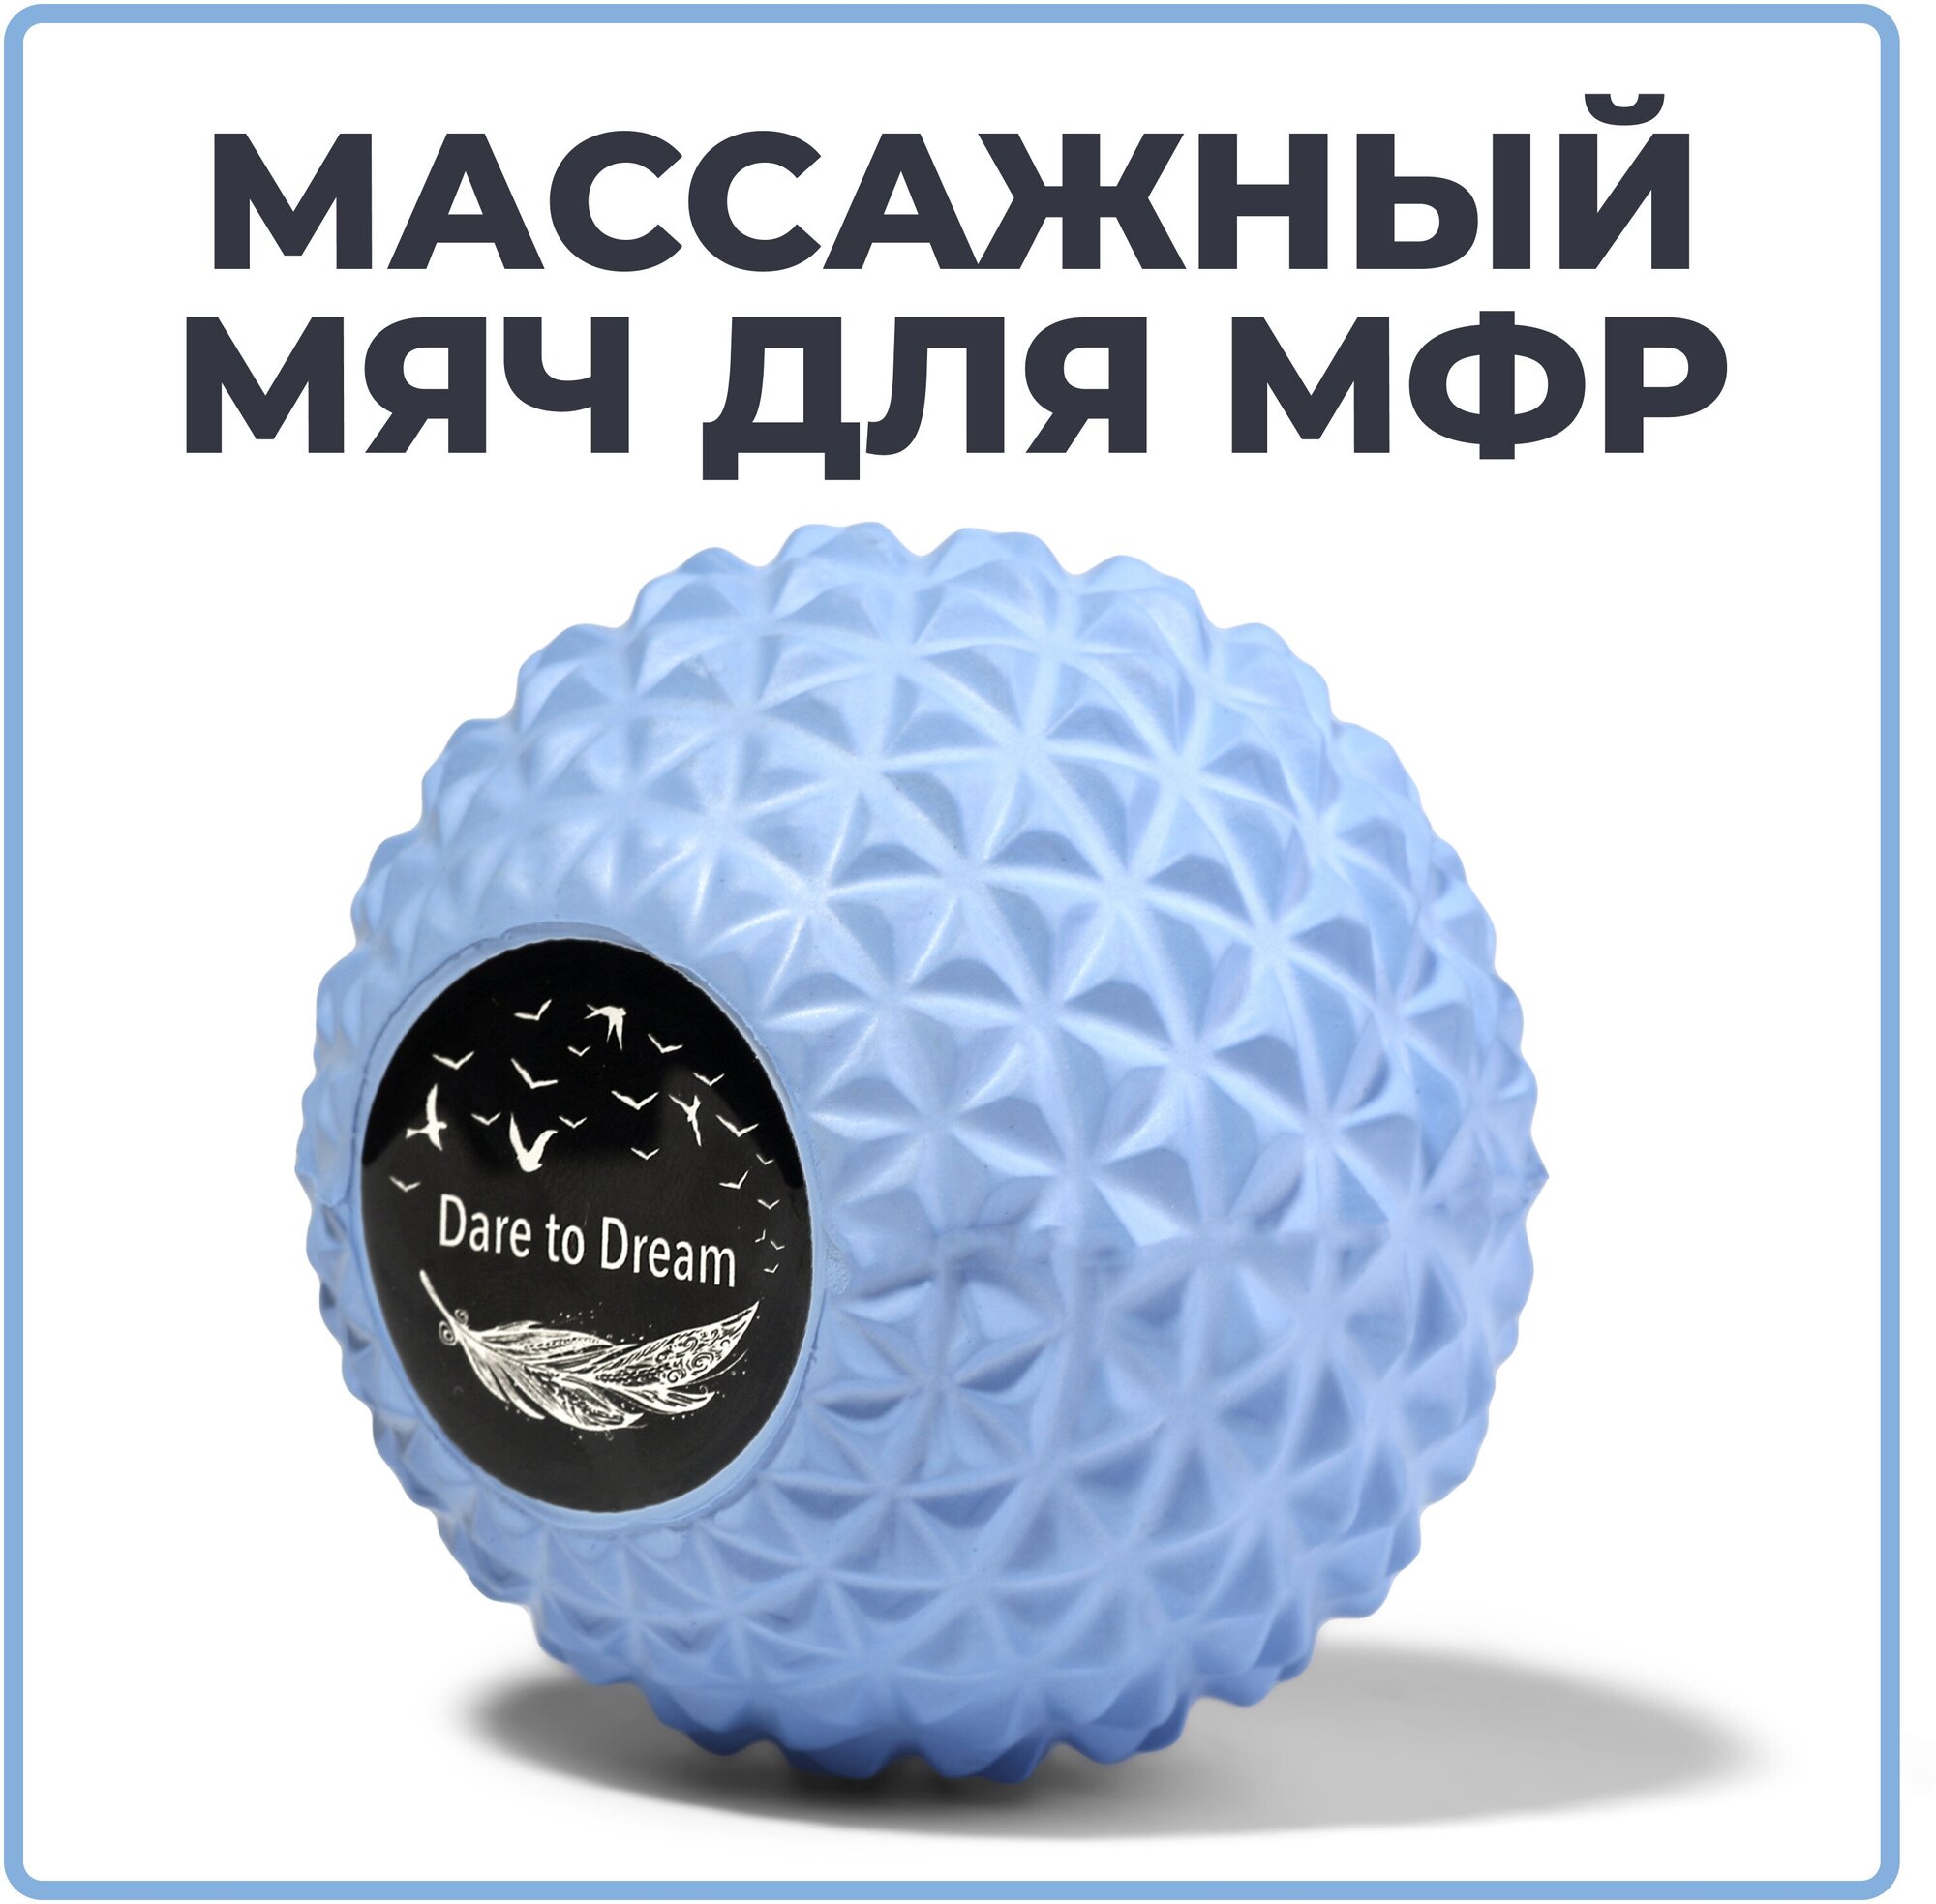 Мячик массажный для йоги, пилатеса и МФР, голубой, валик для спины, мяч для МФР, ролик массажный